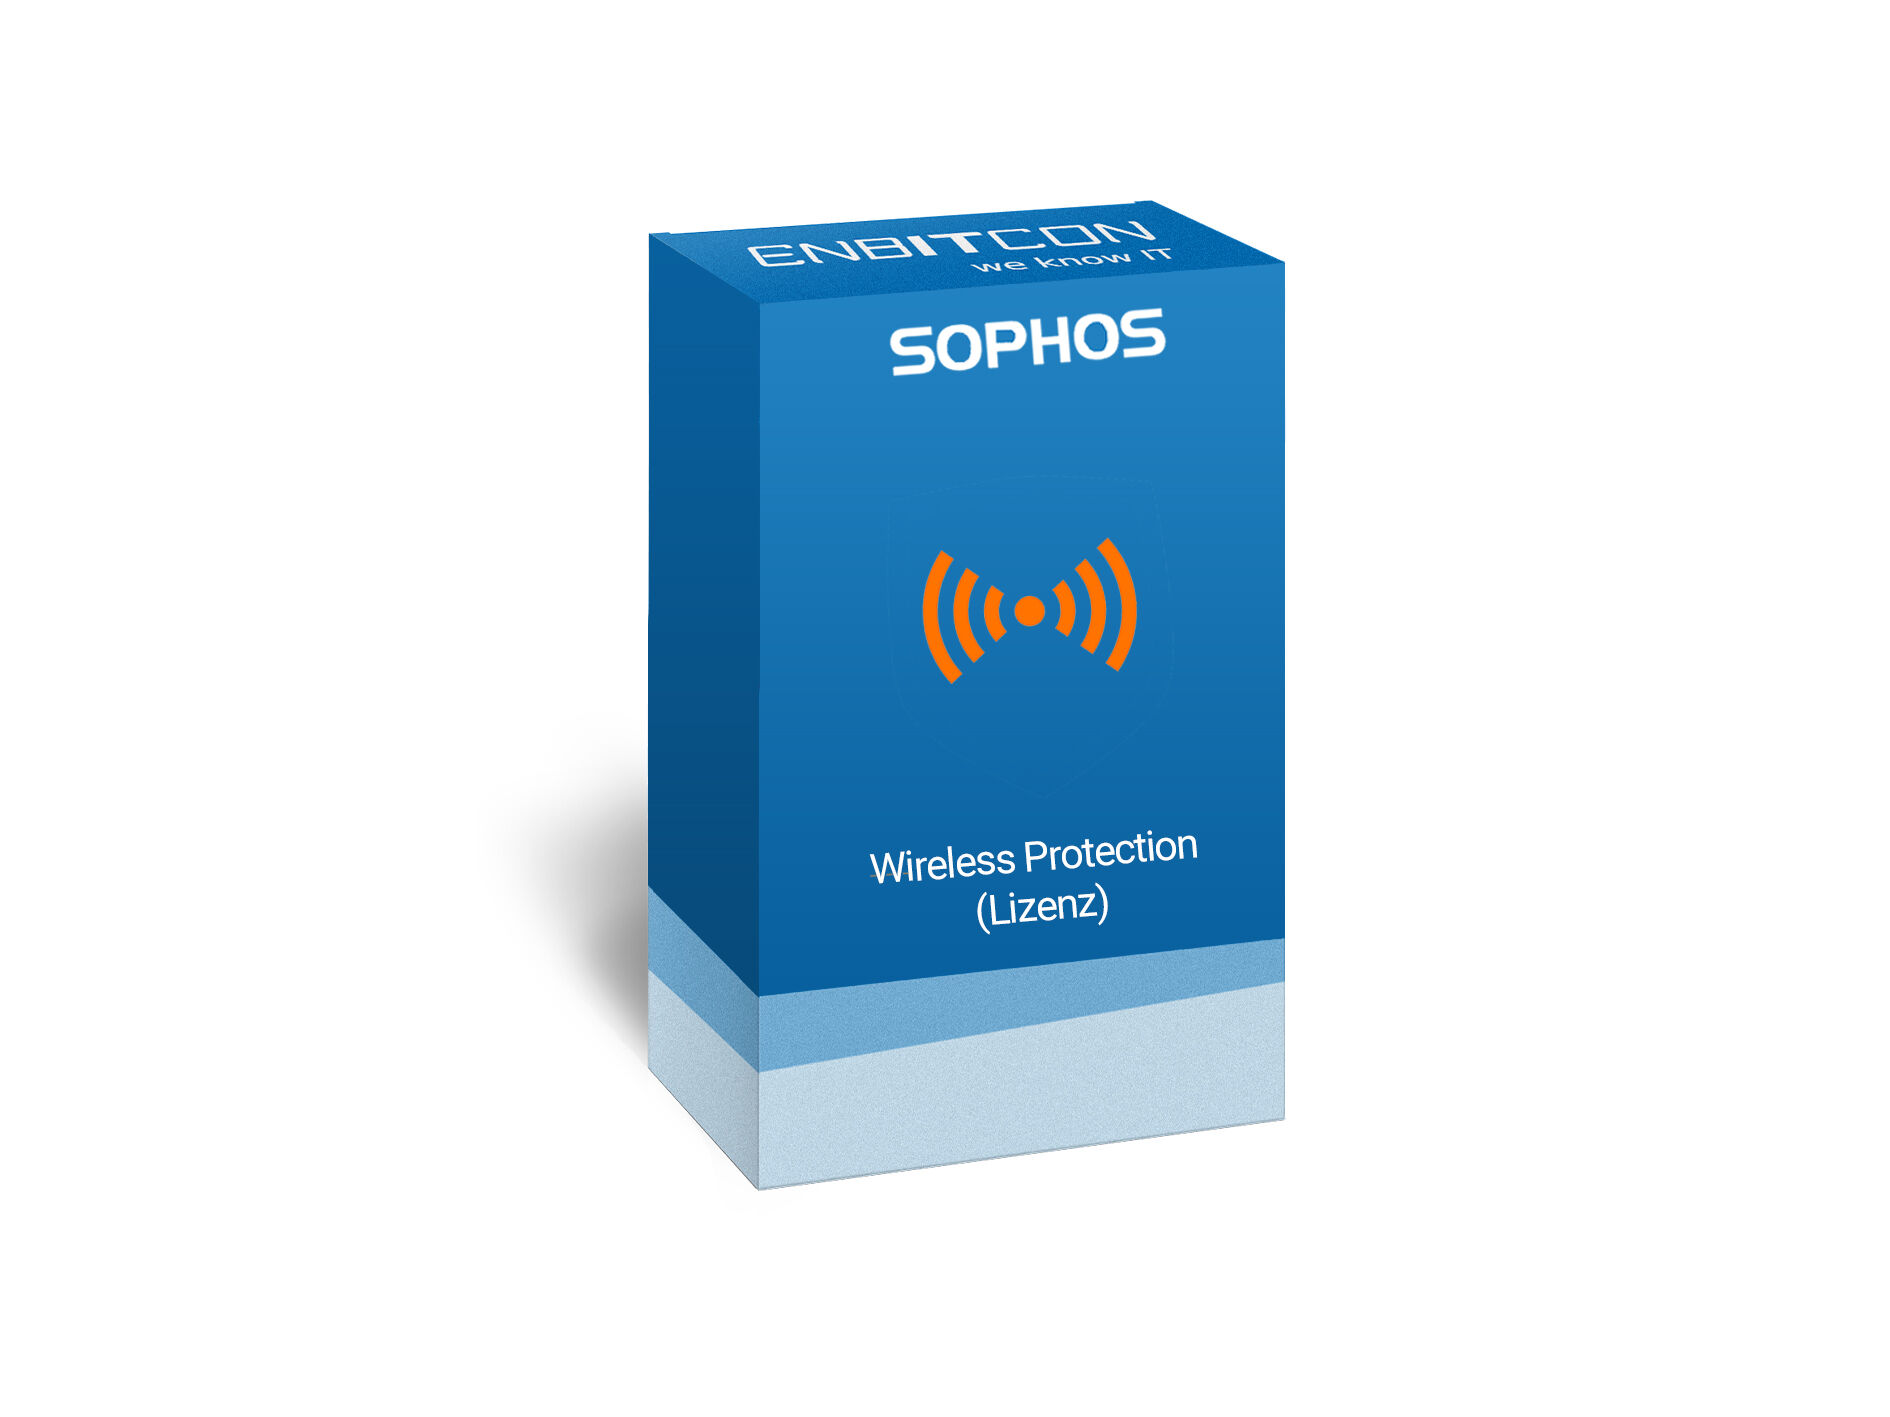 Sophos WIreless Protection Lizenz Vorschaubild bestehend aus dem Sophos logo und einem blauen Schild, indem sich orangene Funkwellen befinden